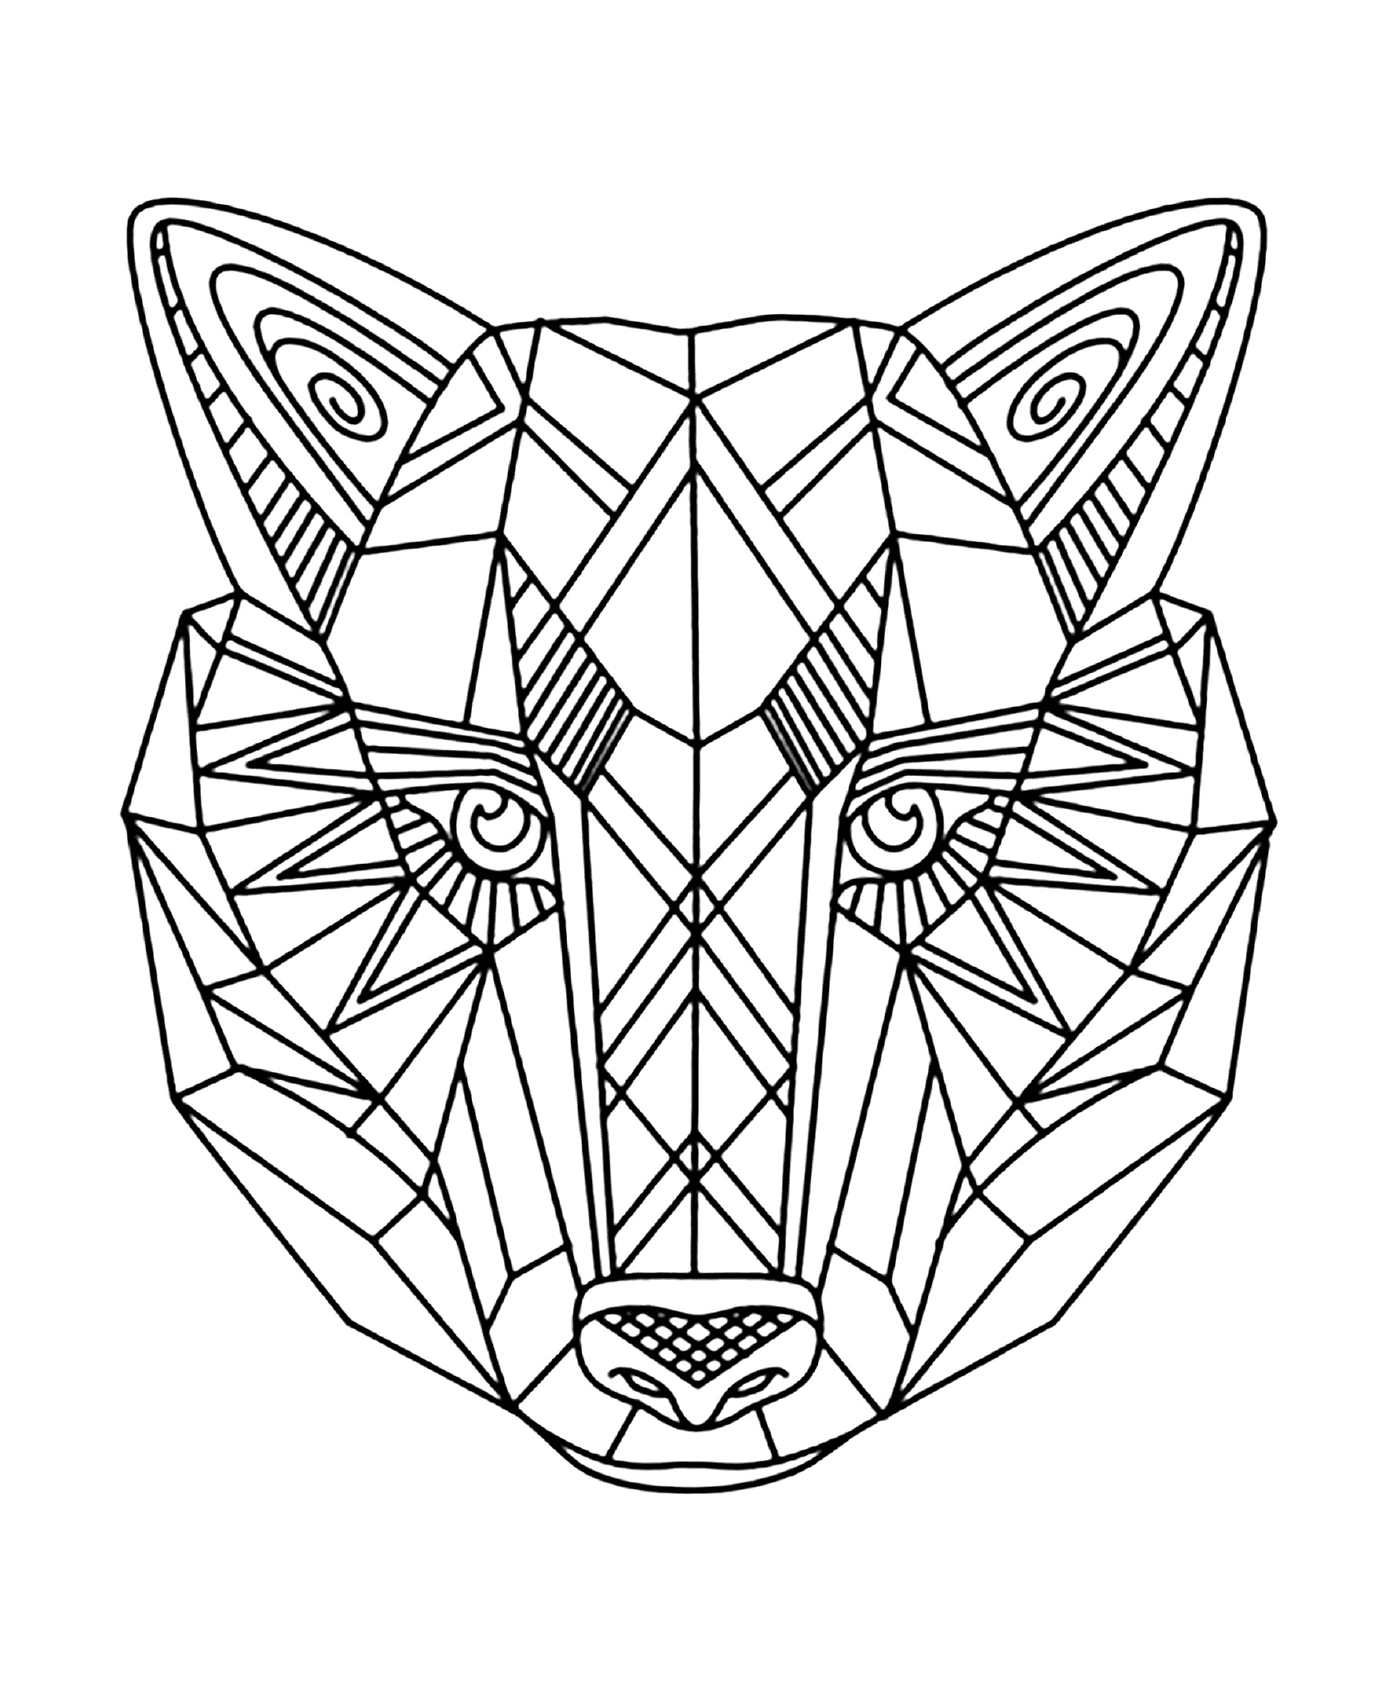   Animal avec un motif géométrique sur le visage 